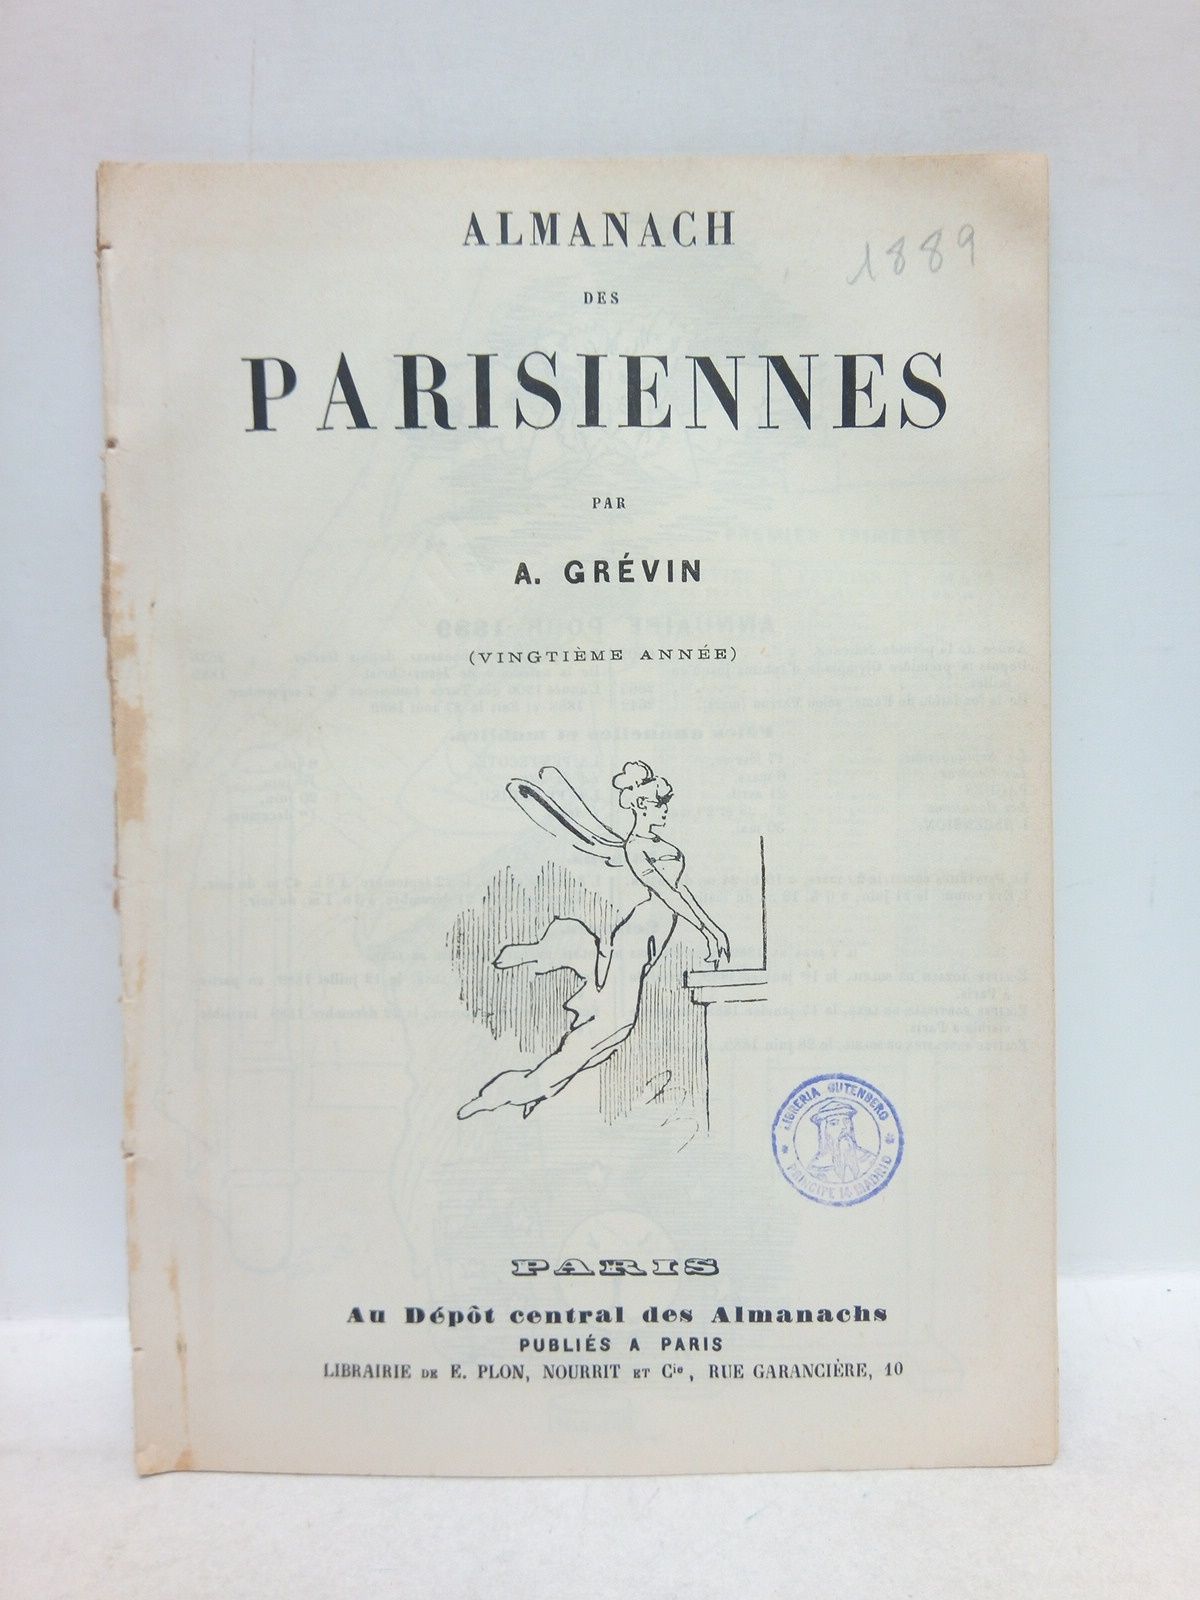 GRVIN, A. - Almanachdes Parisiennes. (Vingtime anne)